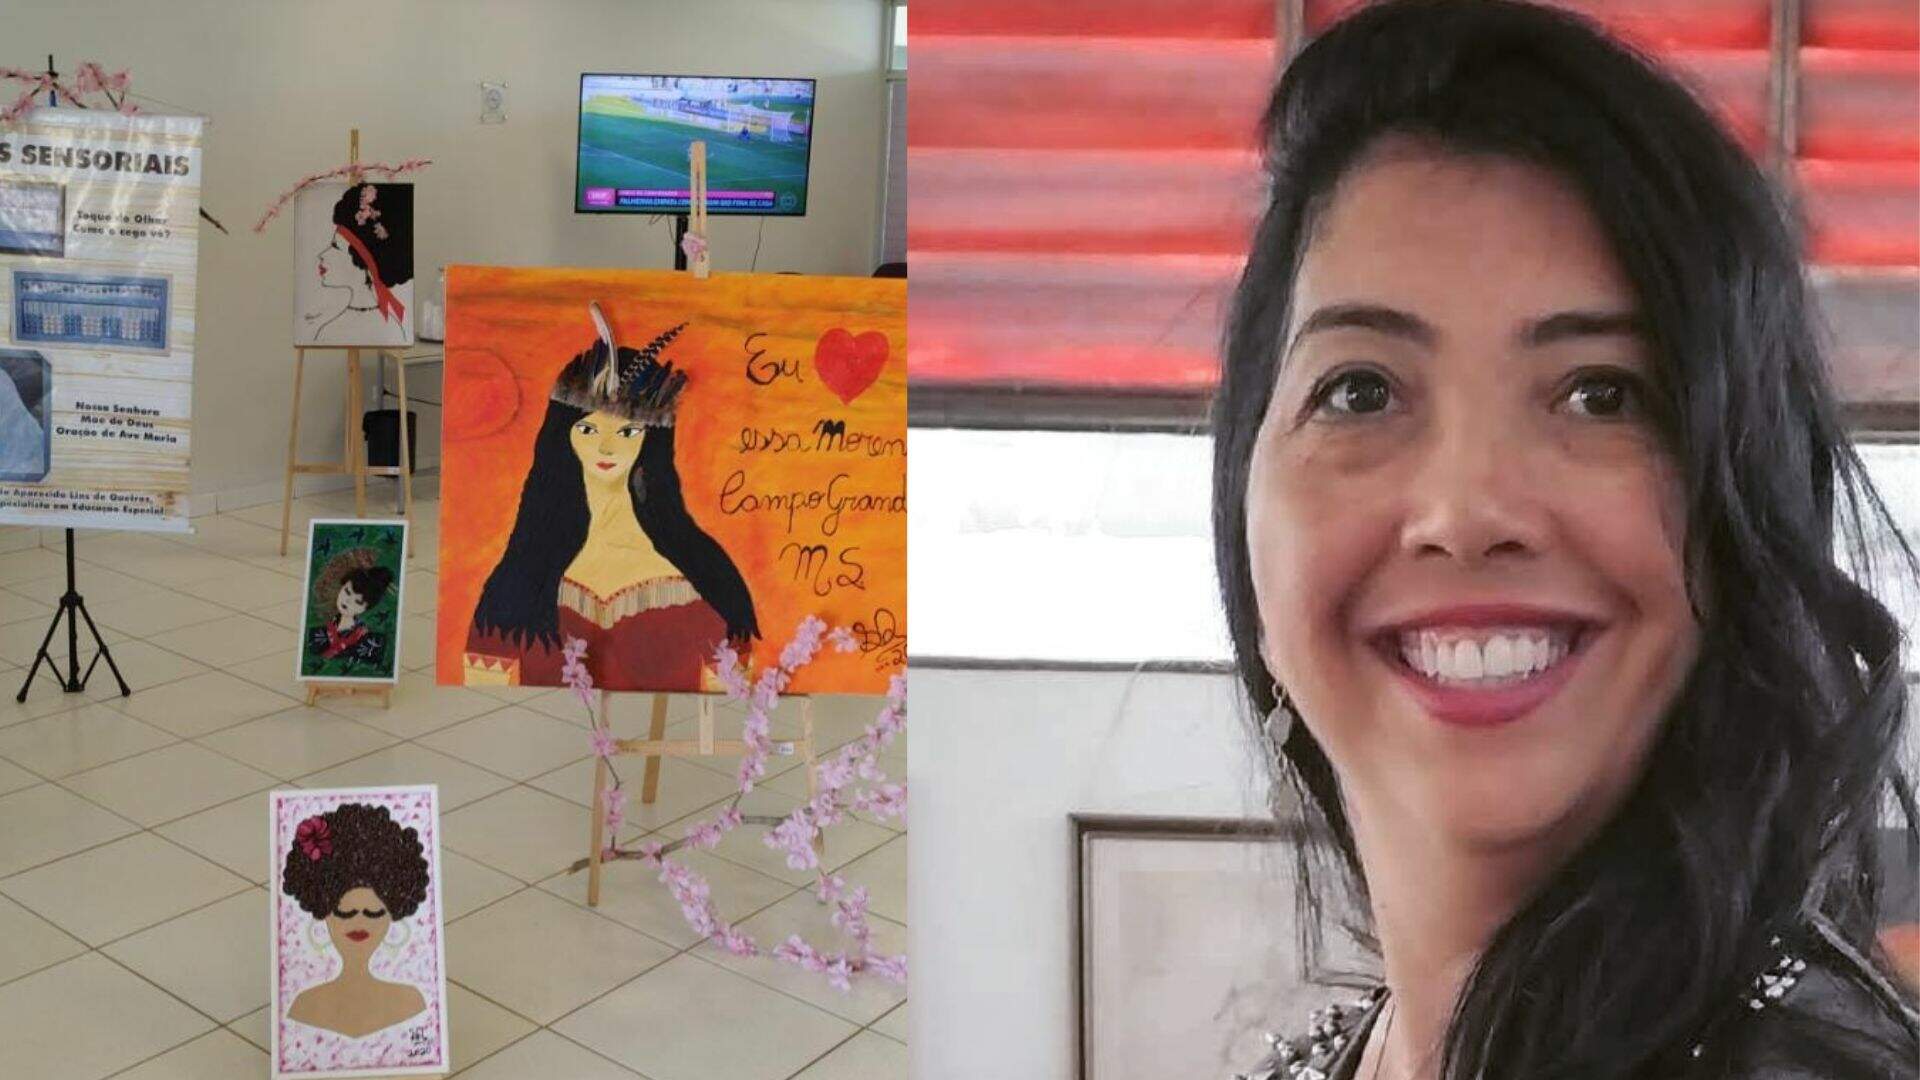 De educadora à artista, Sônia Queiroz faz obras para o público cego com sementes e botões